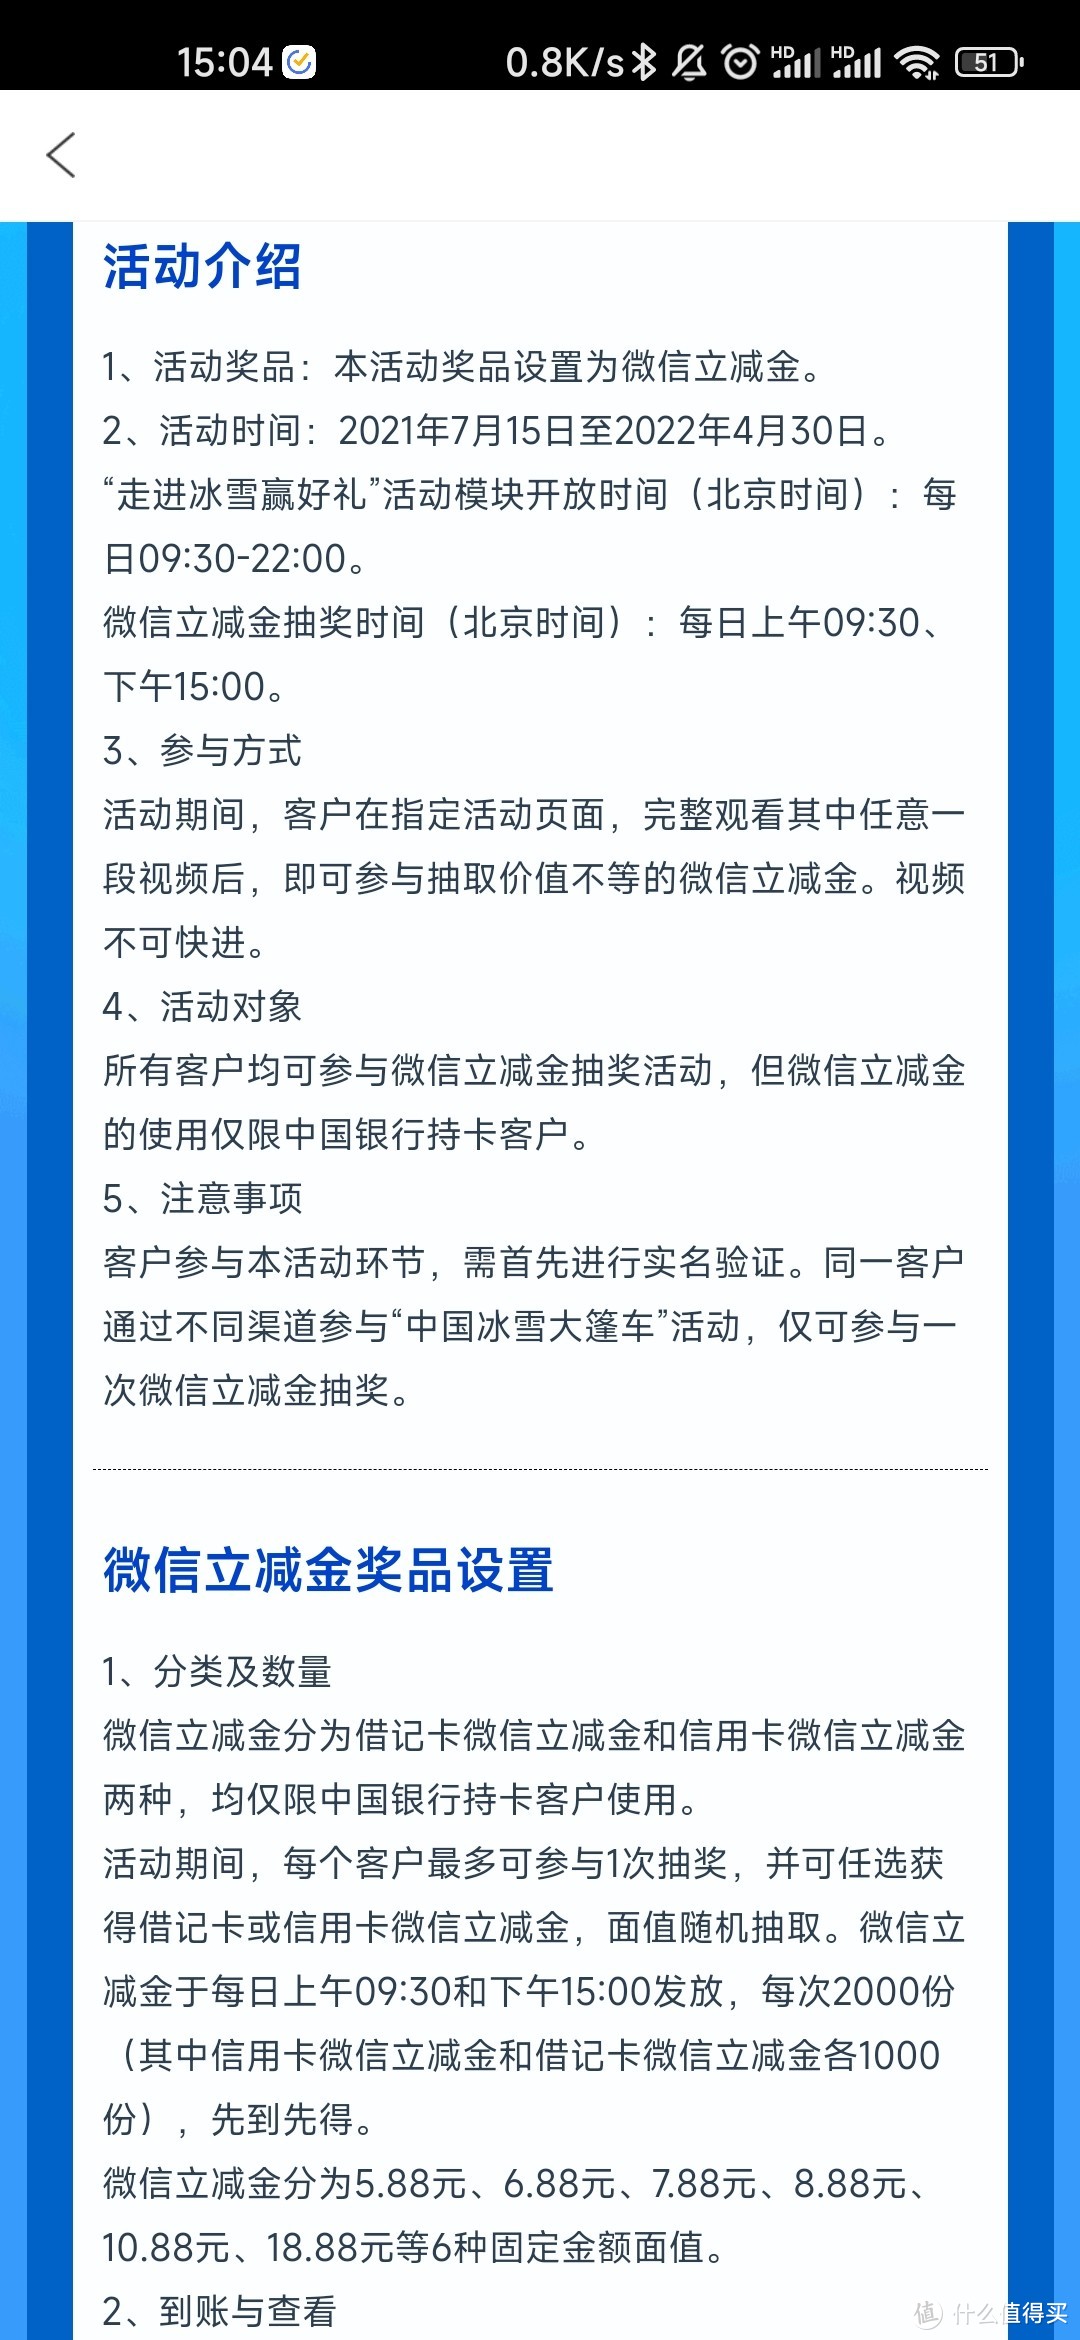 中国银行冰雪大篷车活动，抽取微信立减金